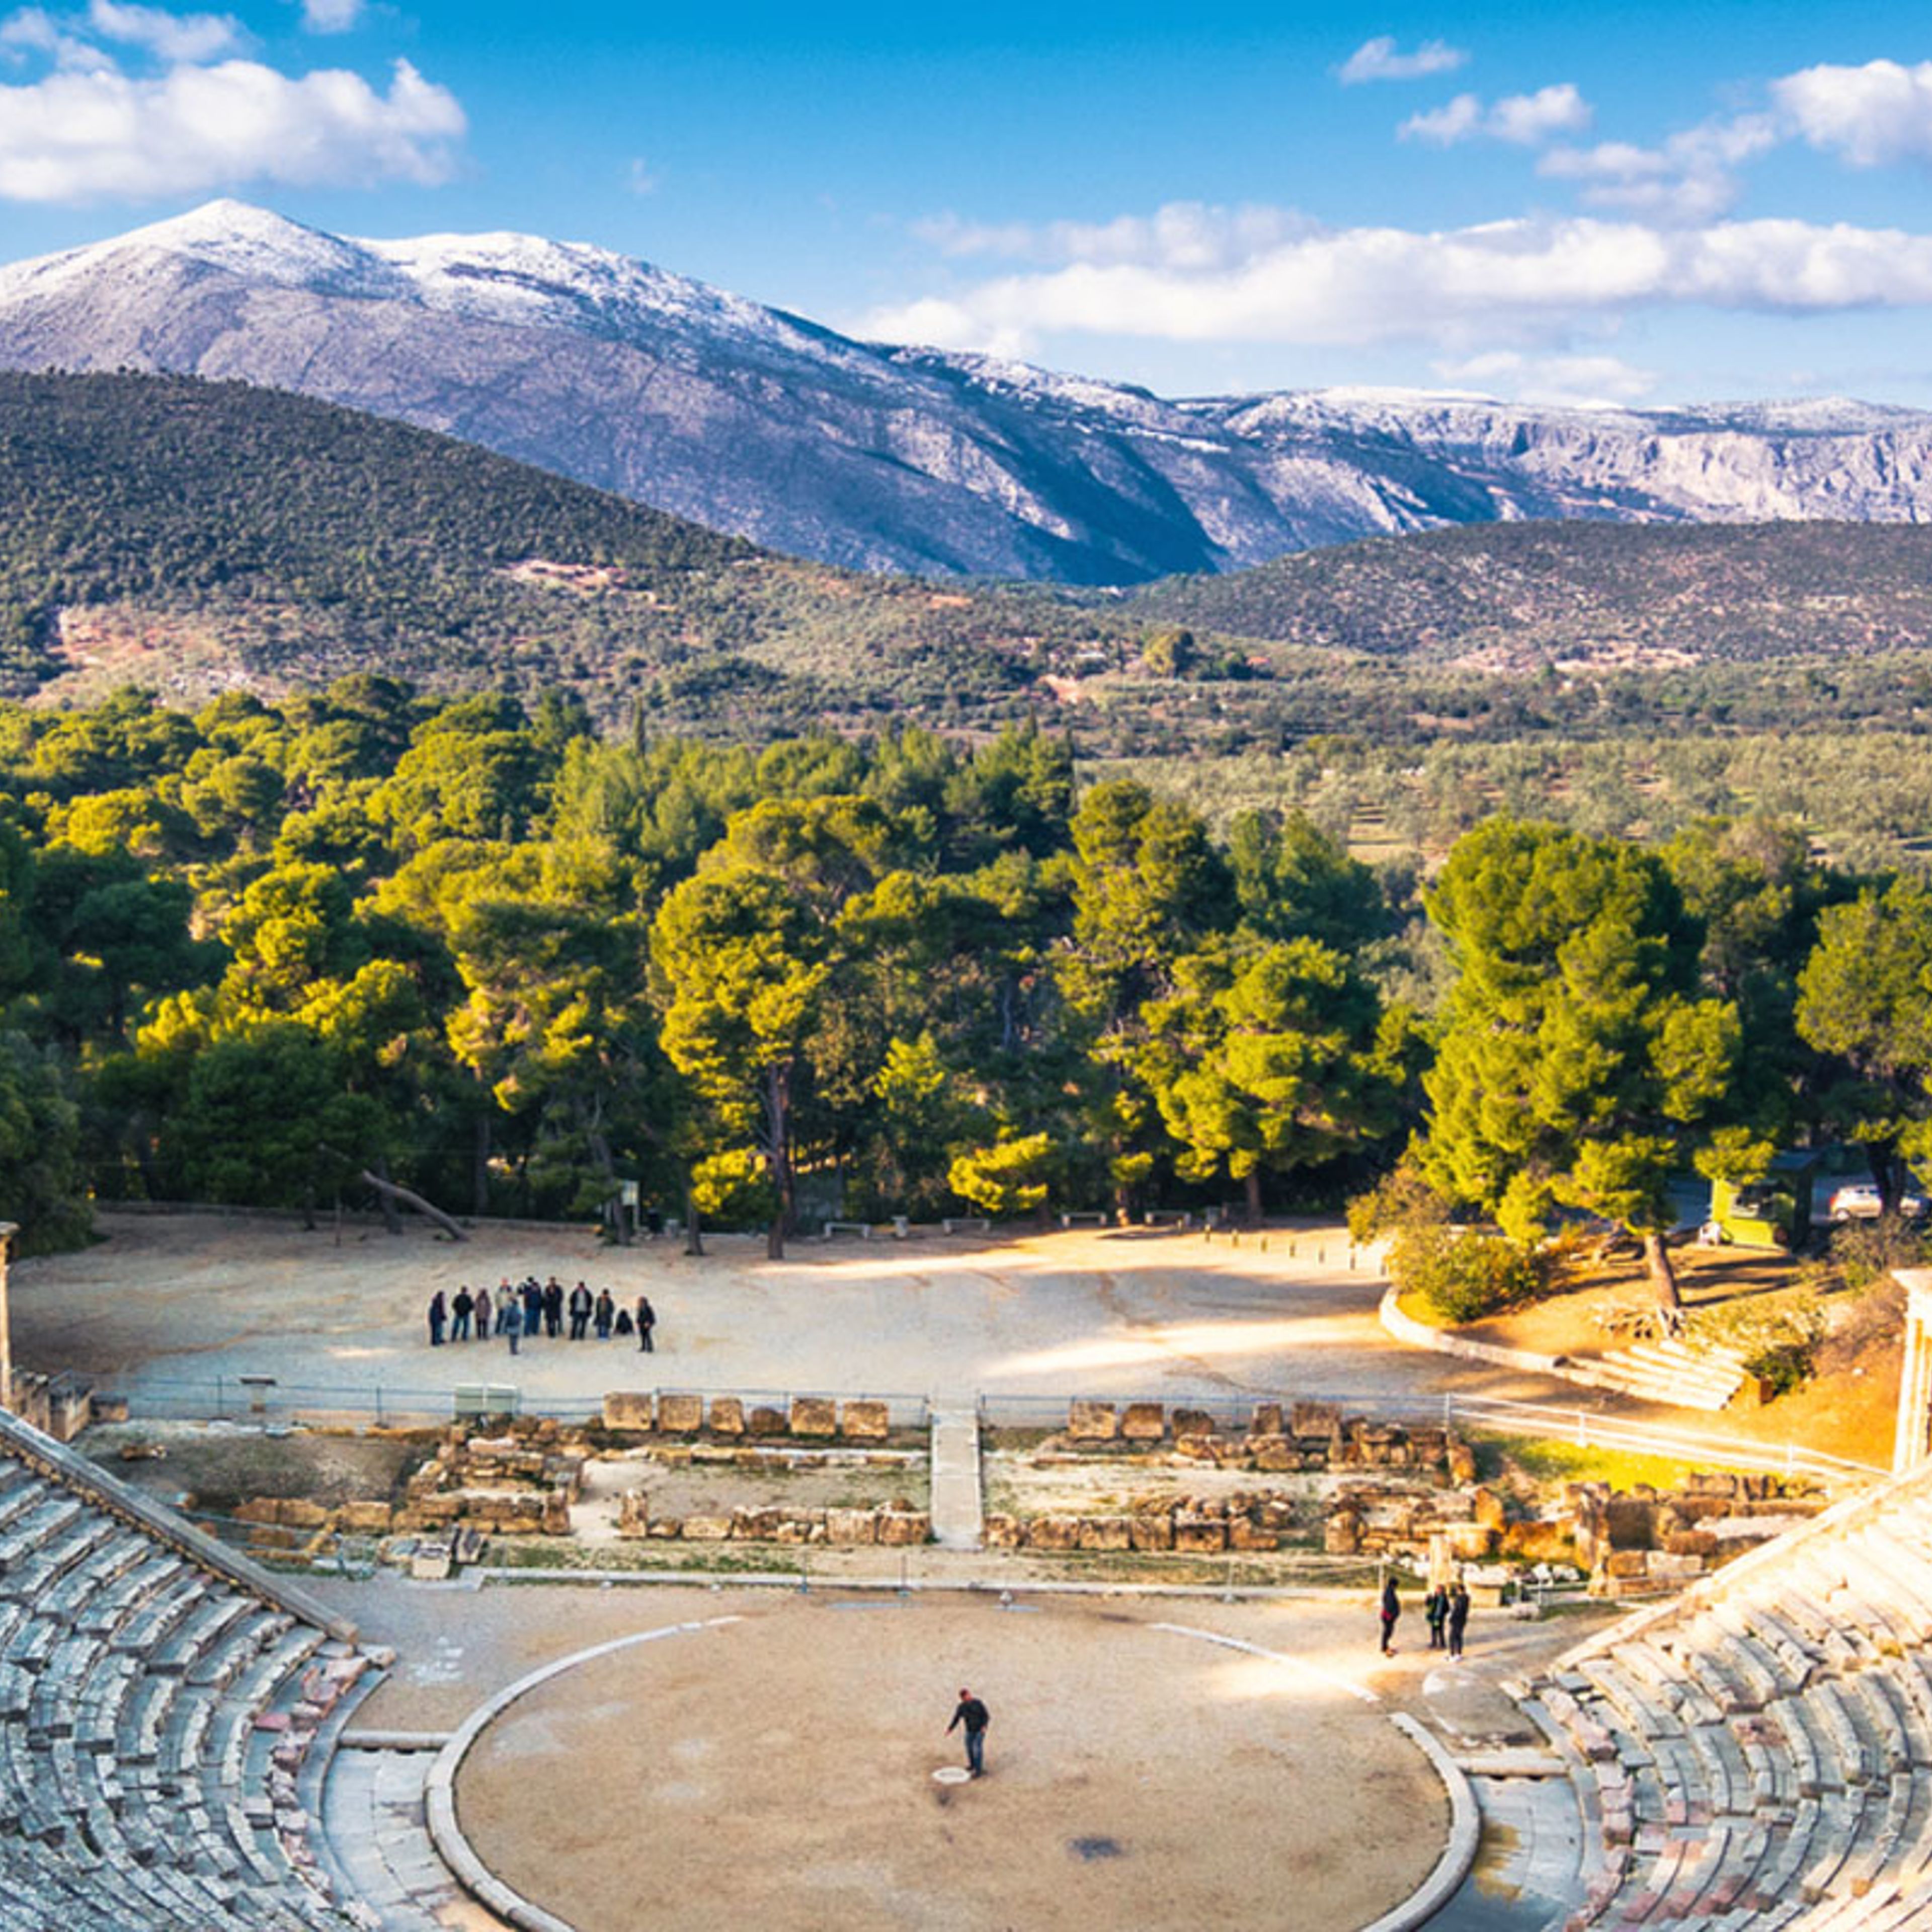 Le théâtre antique d’Epidaure (ou « Epidaure »)